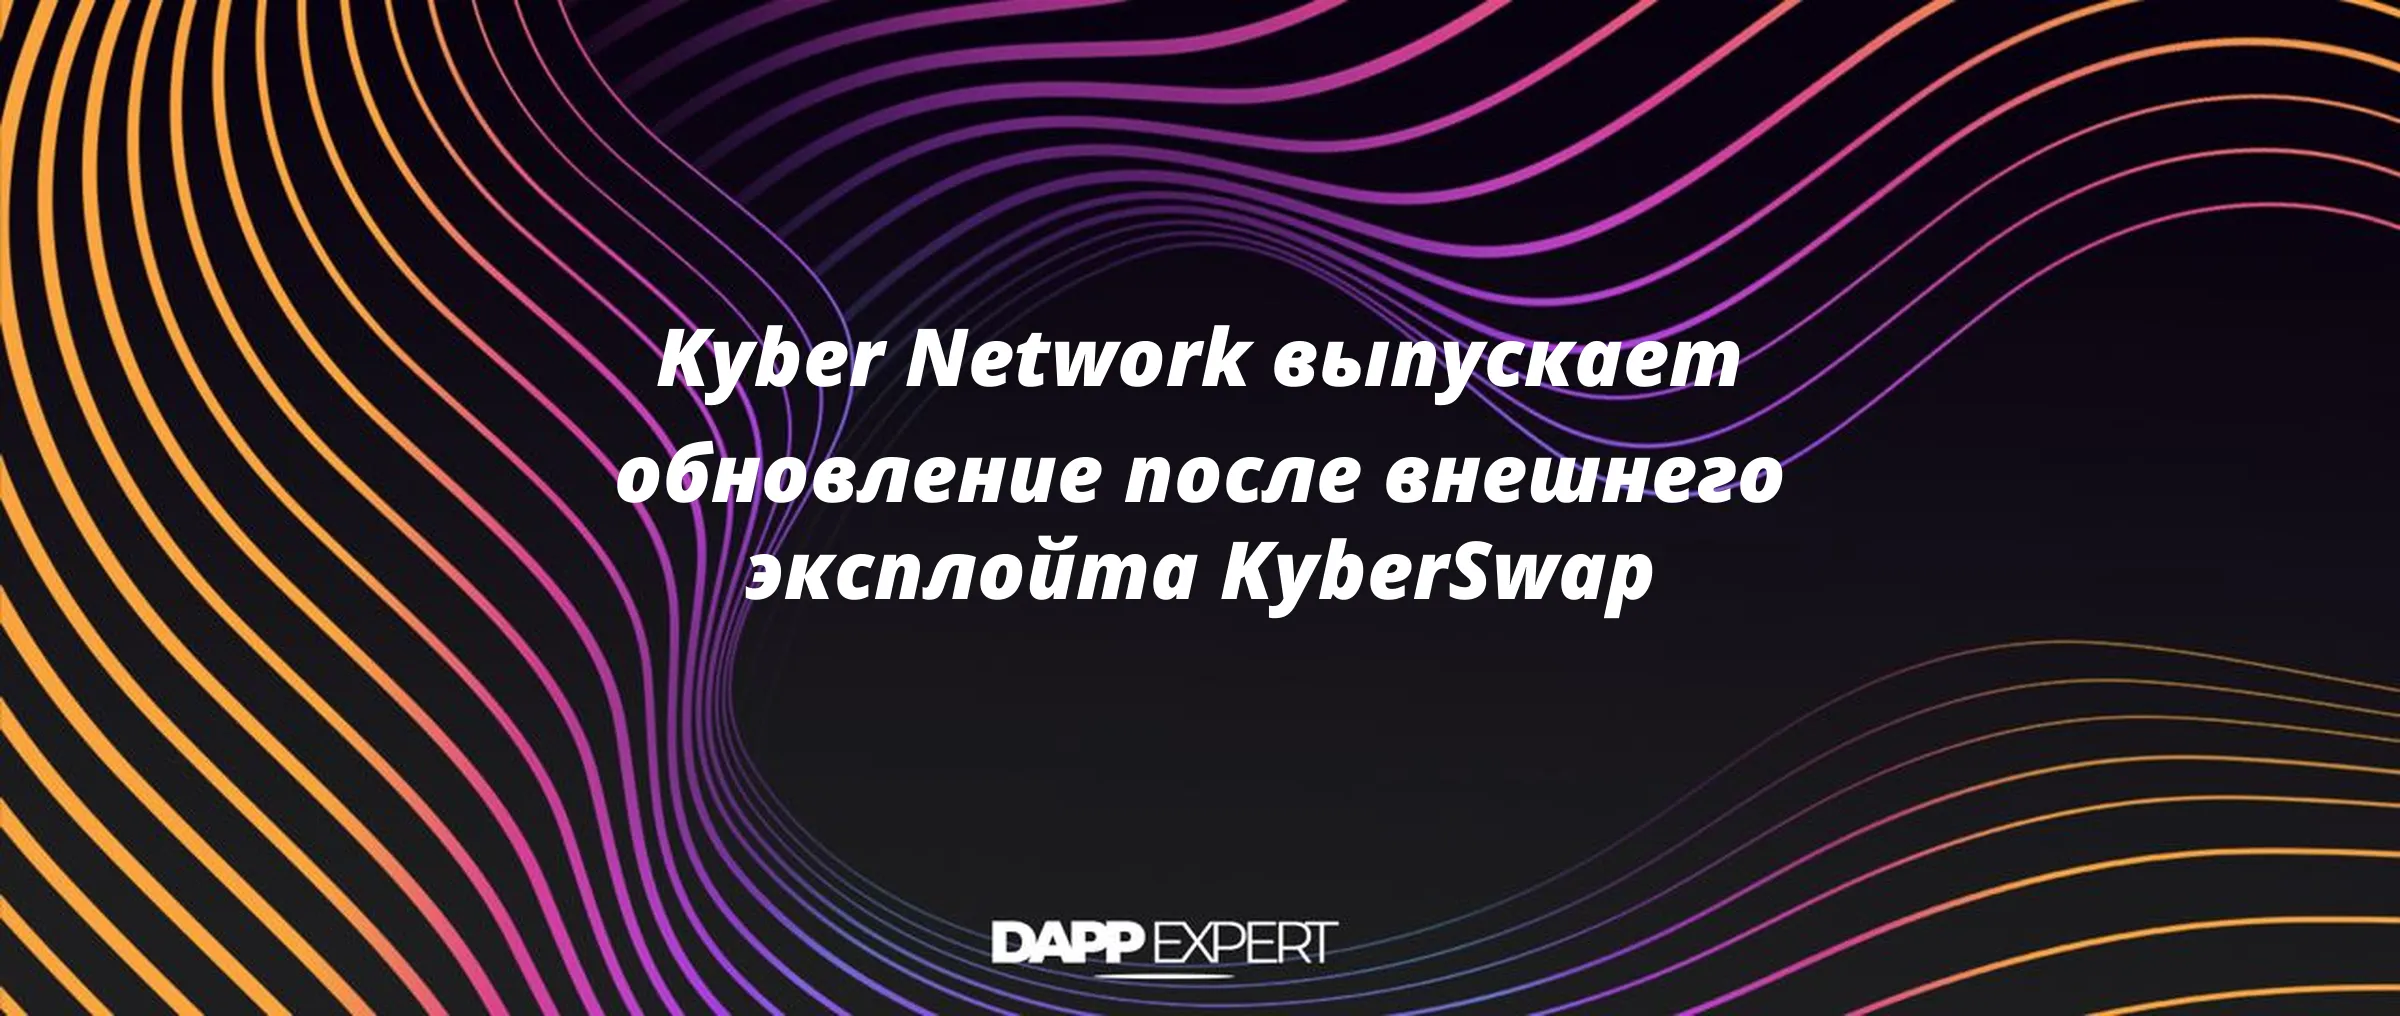 Kyber Network выпускает обновление после внешнего эксплойта KyberSwap